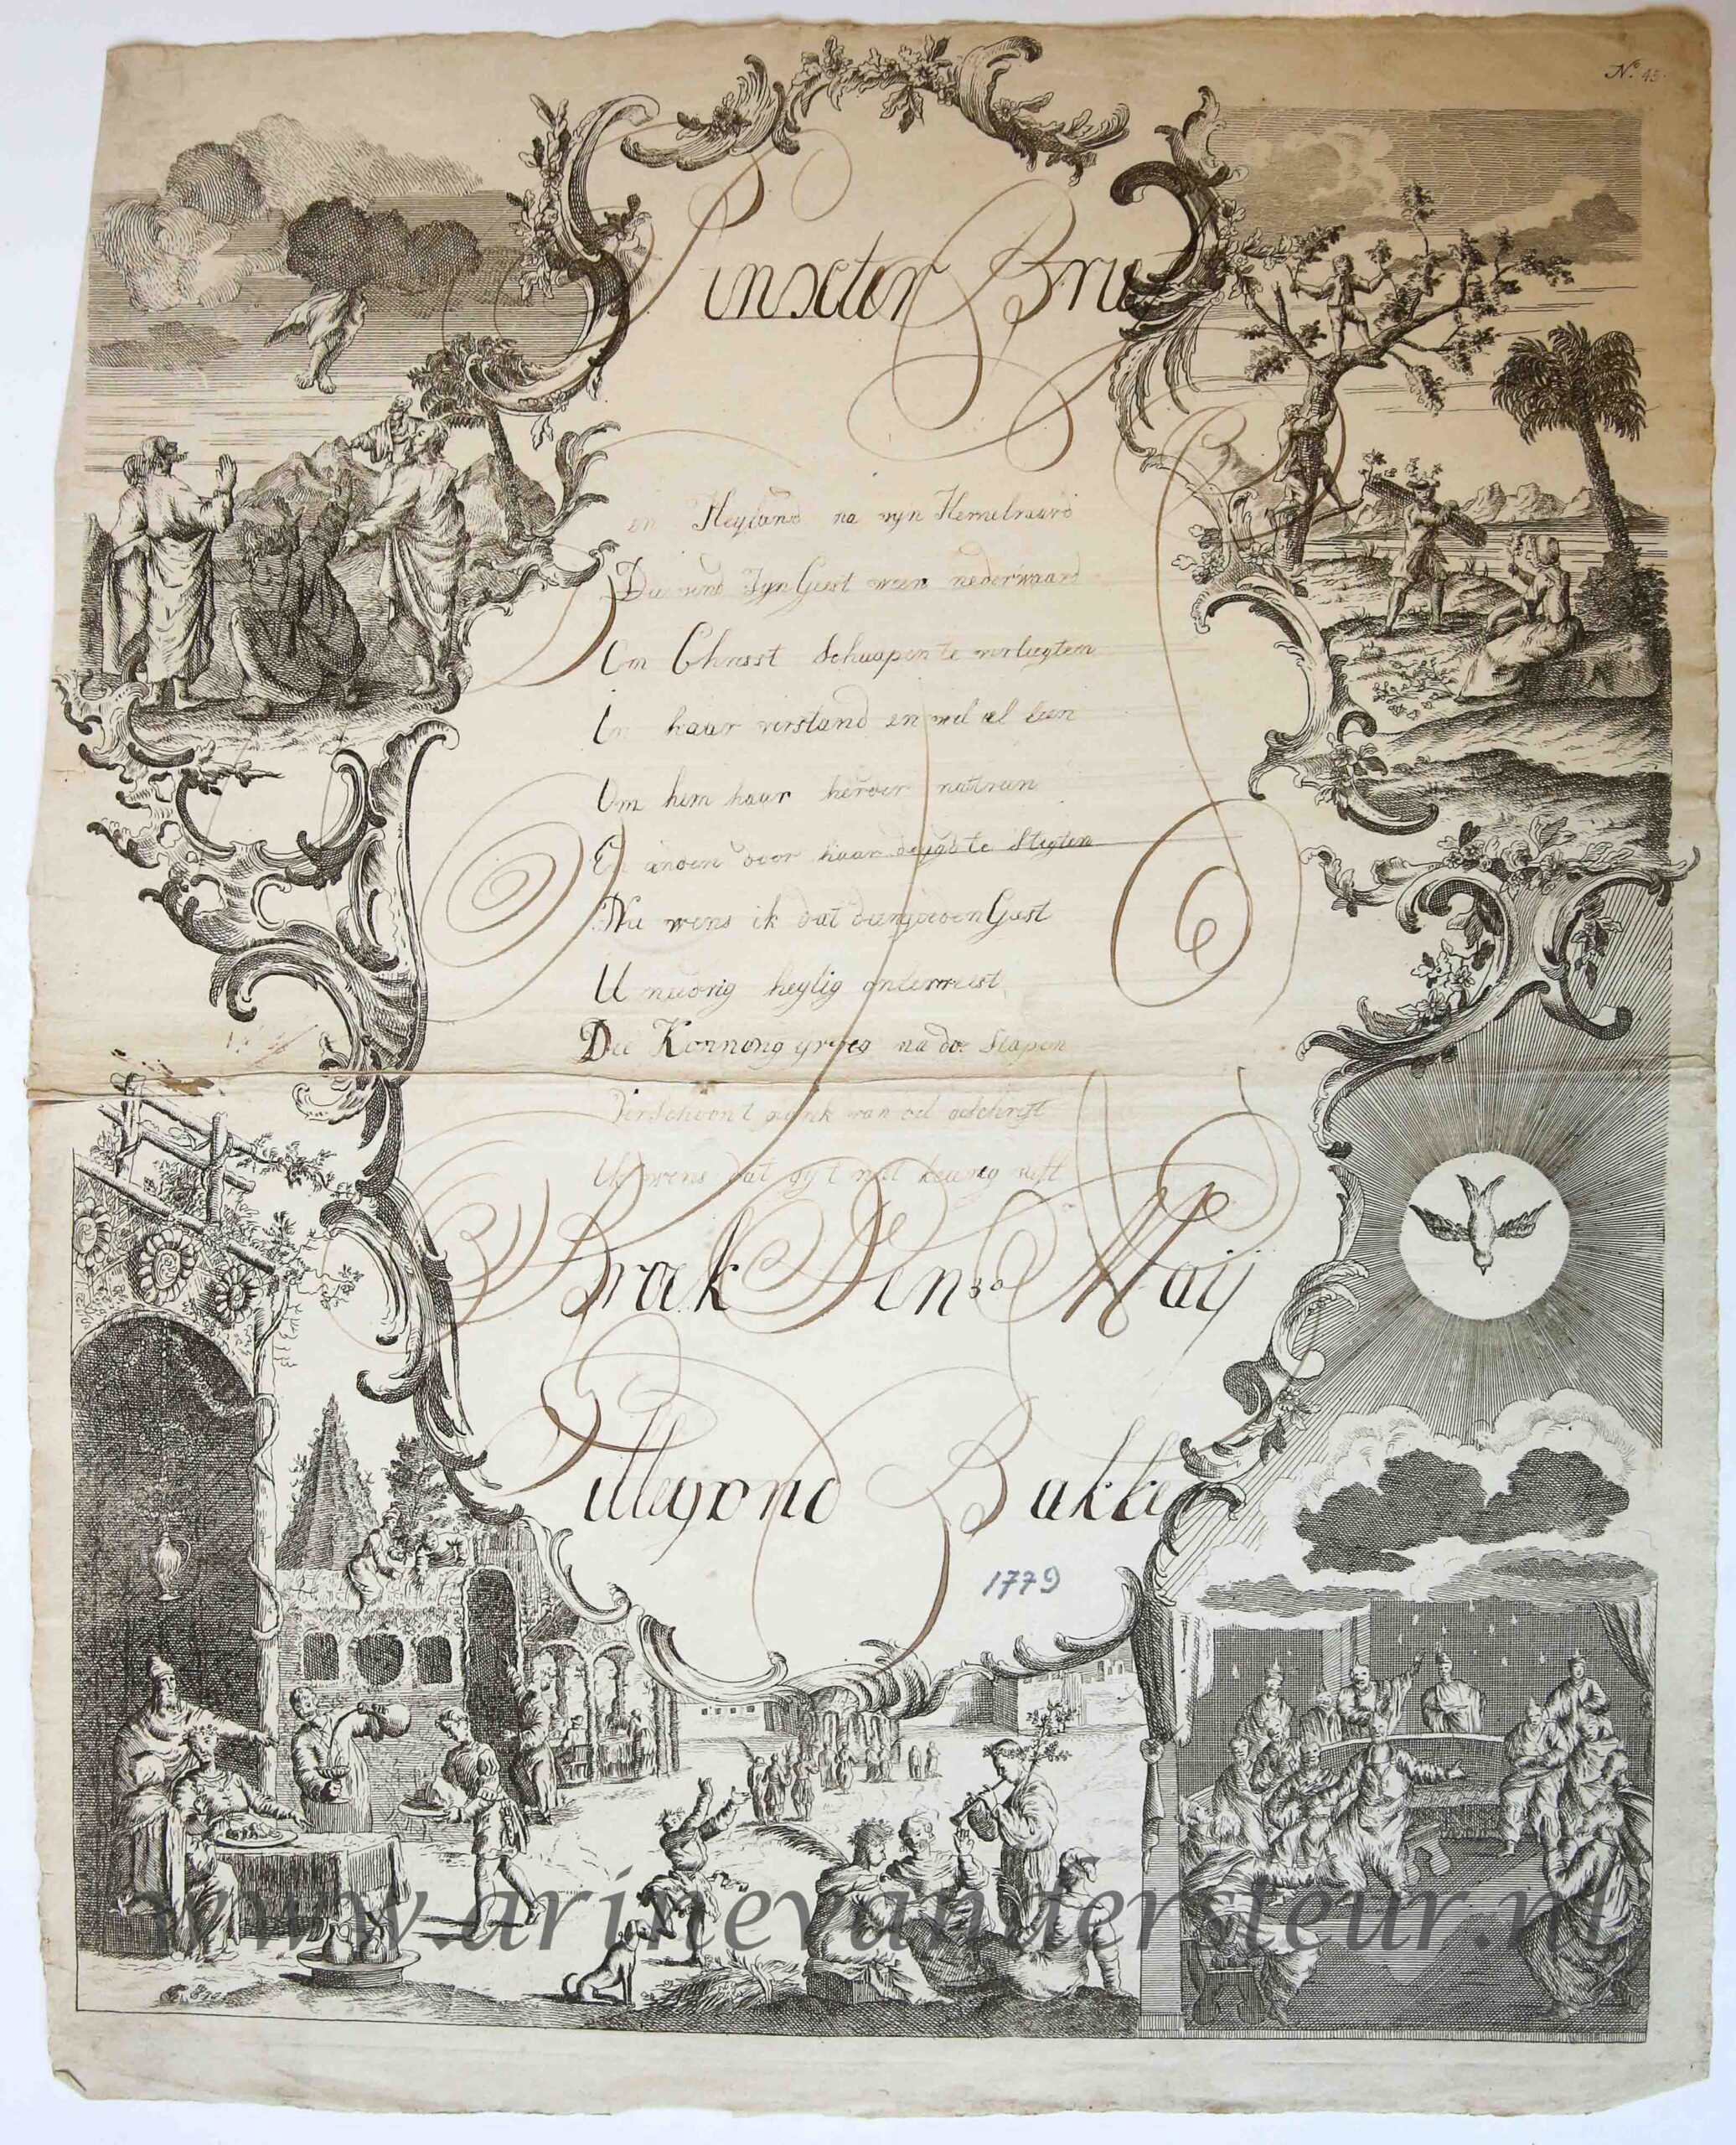 [Pinksterwens / Pentecost Wish Card, 1779] Hillegond Bakker. Wish card for Pentecost, dated 1779, 1 p.